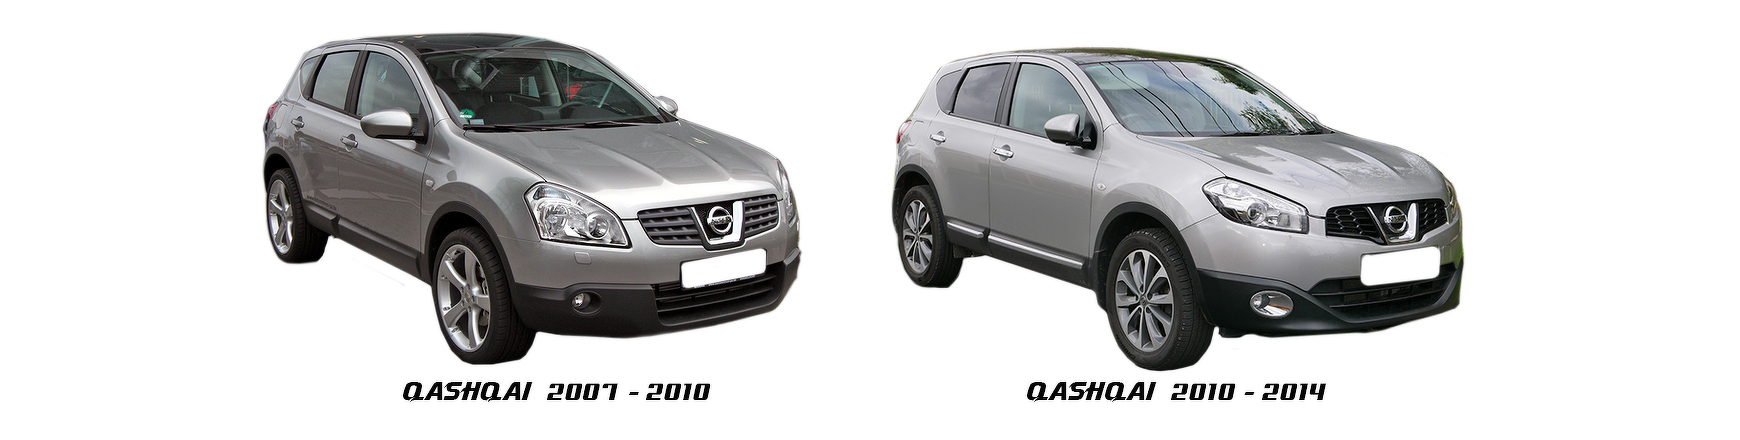 Piezas y Recambios de Nissan Qashqai (J10) de 2007 a 2010 | Veramauto.es